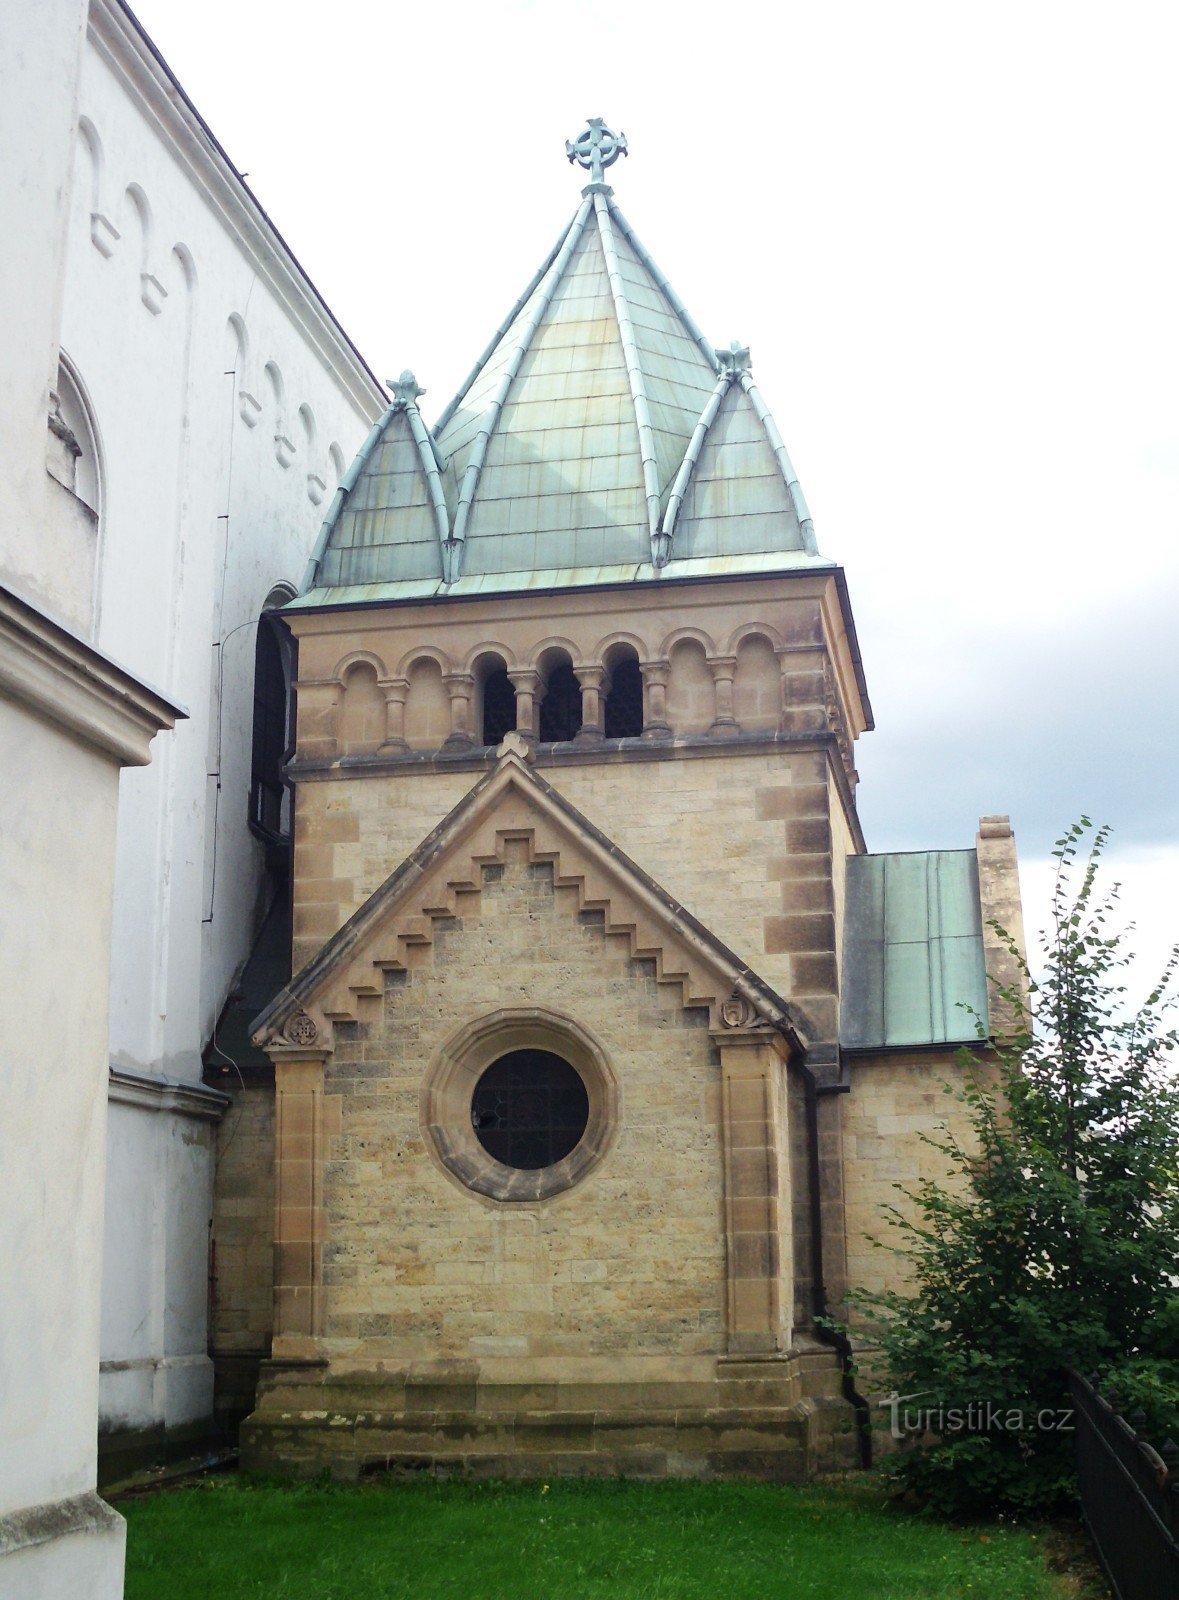 Čakovice (Praga) - Cerkev sv. Remigia